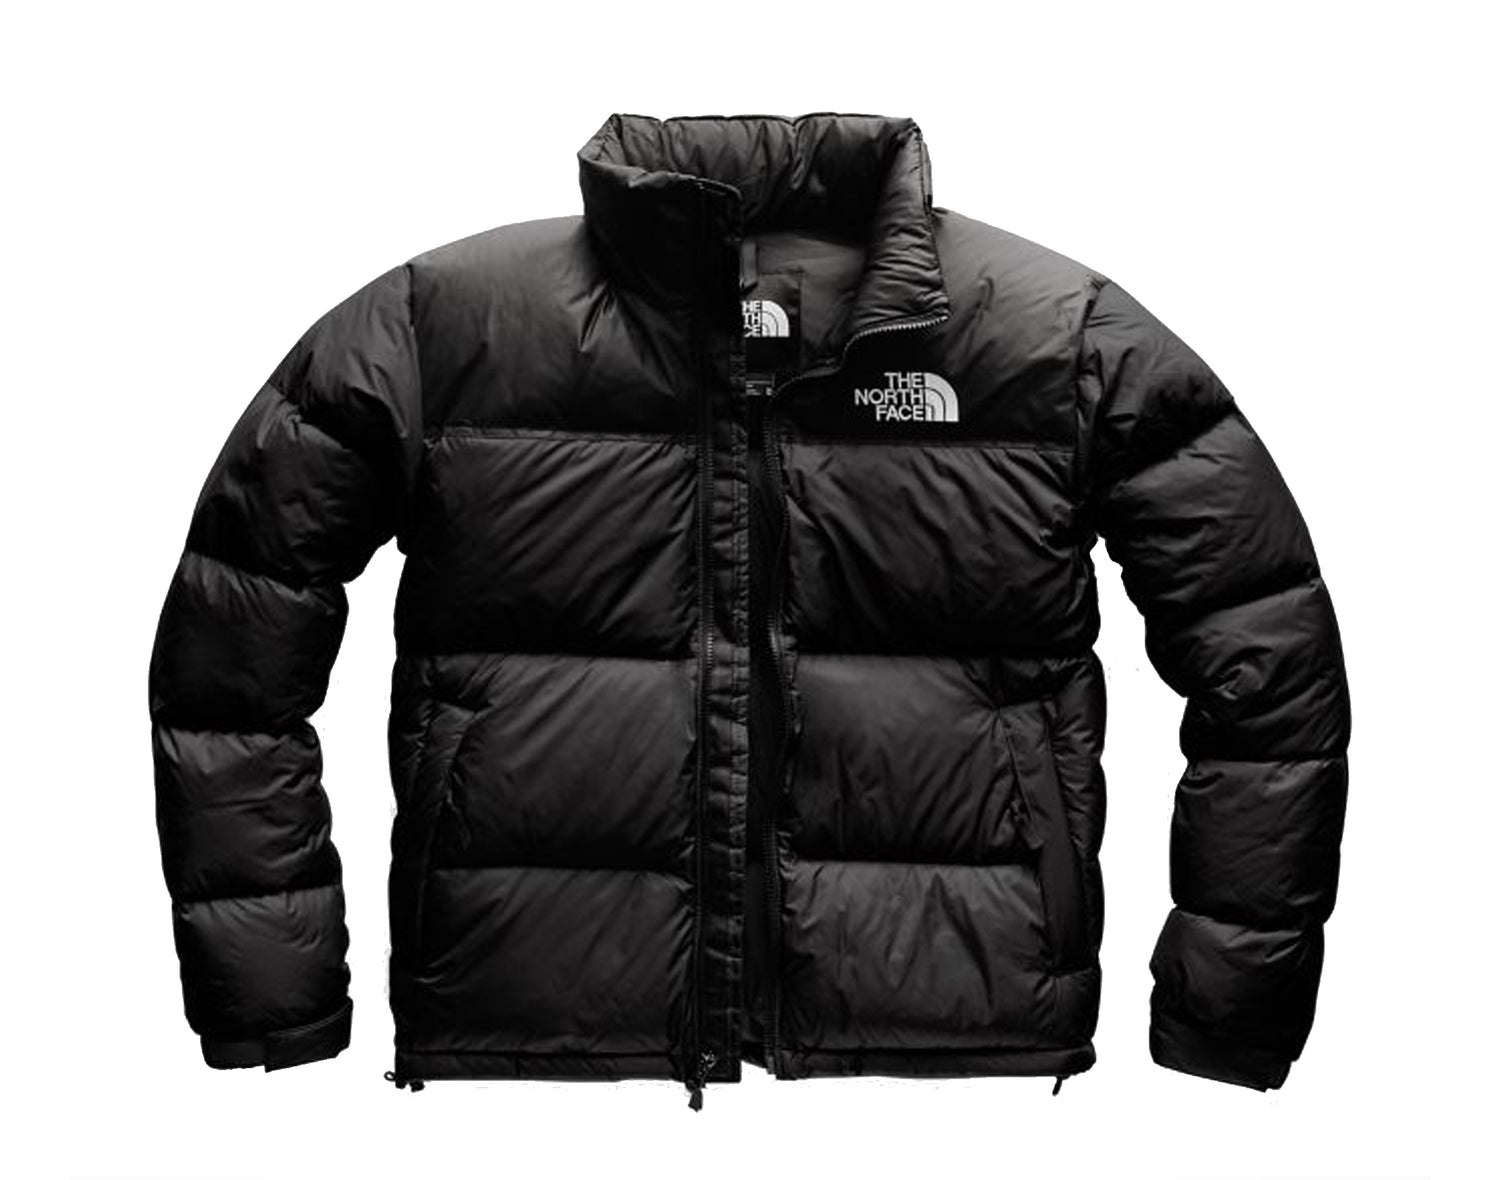 The North Face 1996 Retro Nuptse Men's Jacket